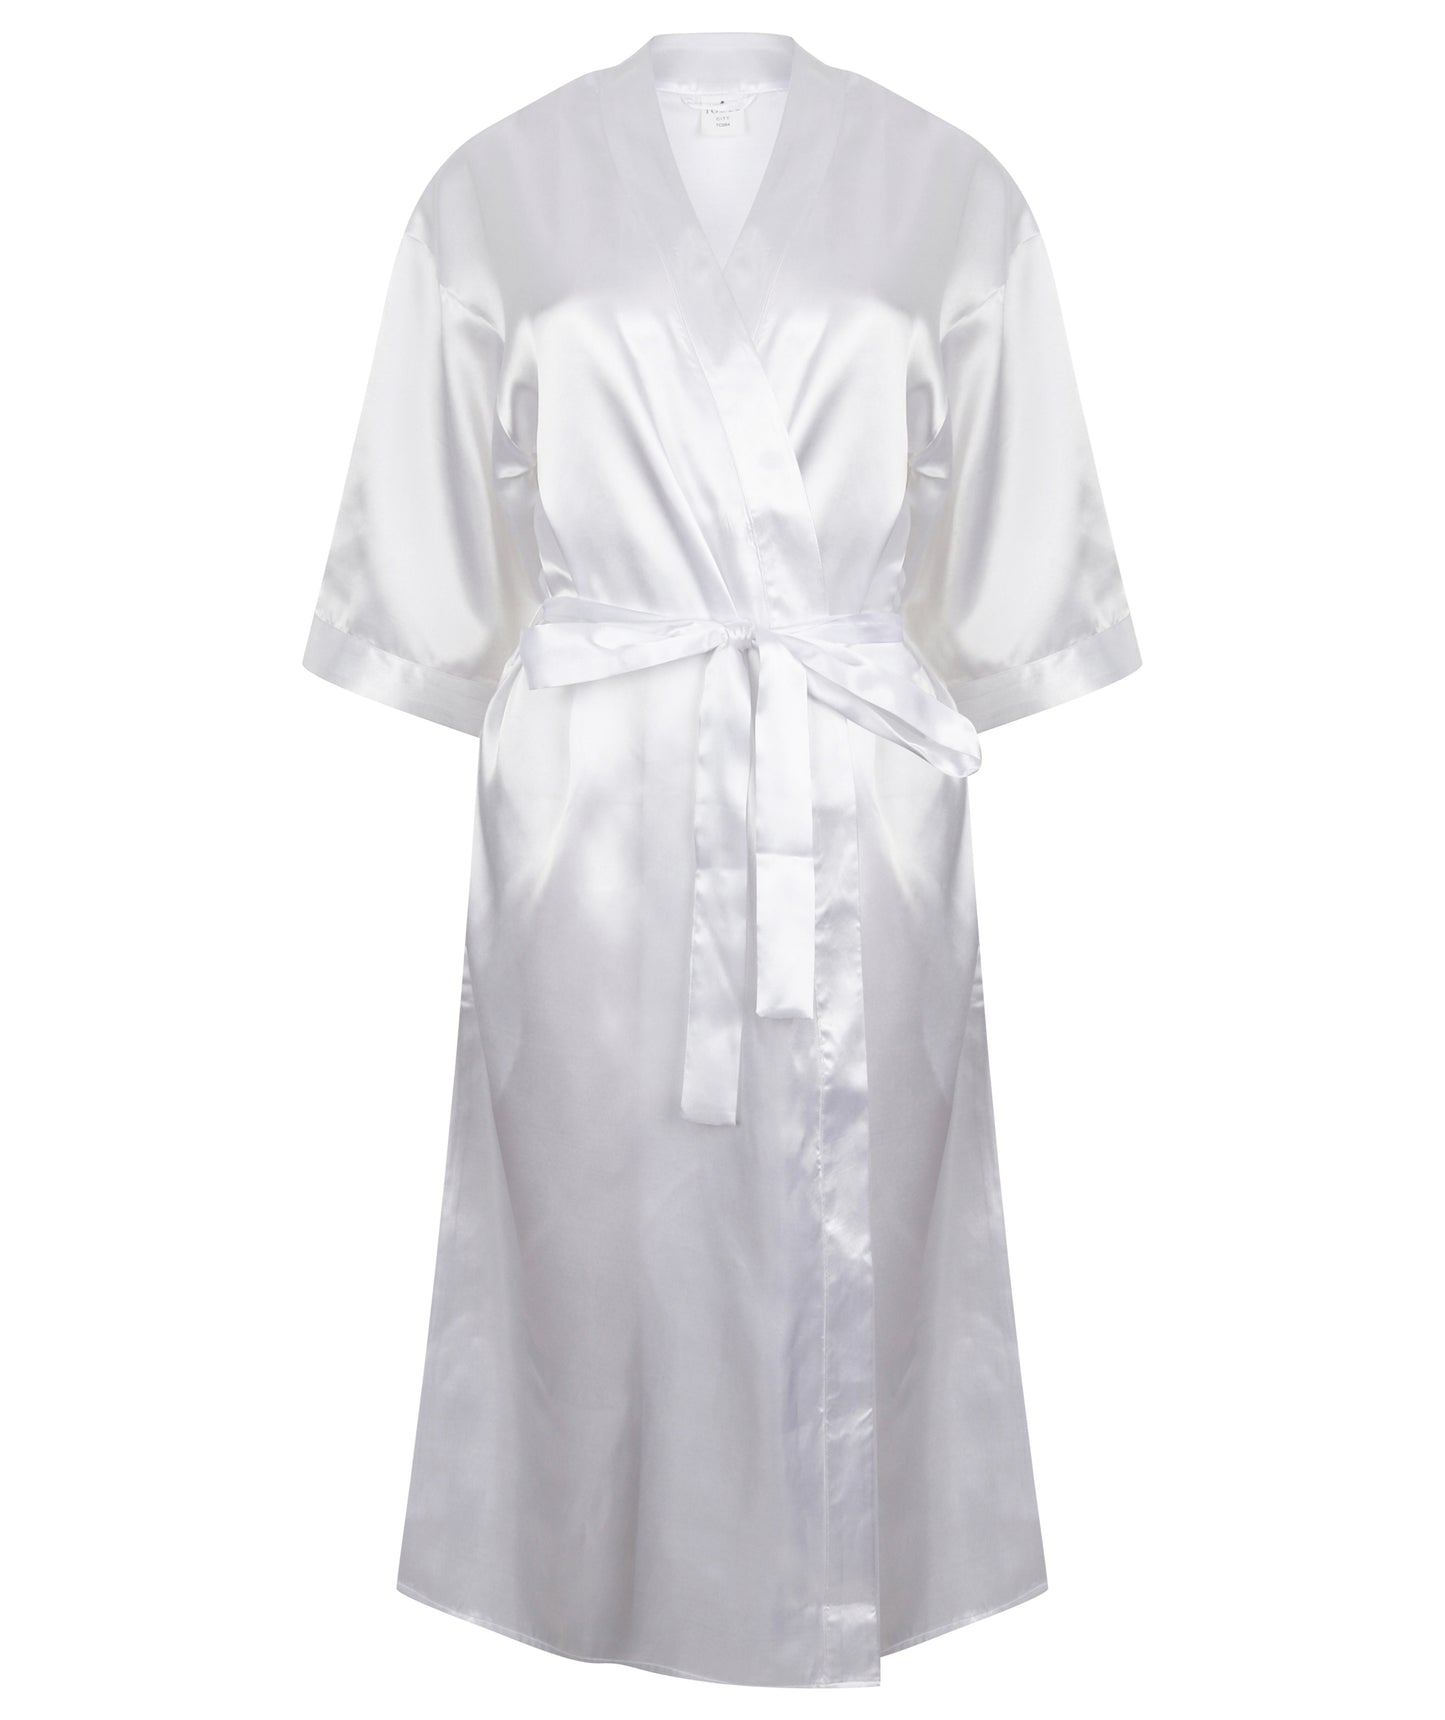 Women's Kimono Style satin robe white